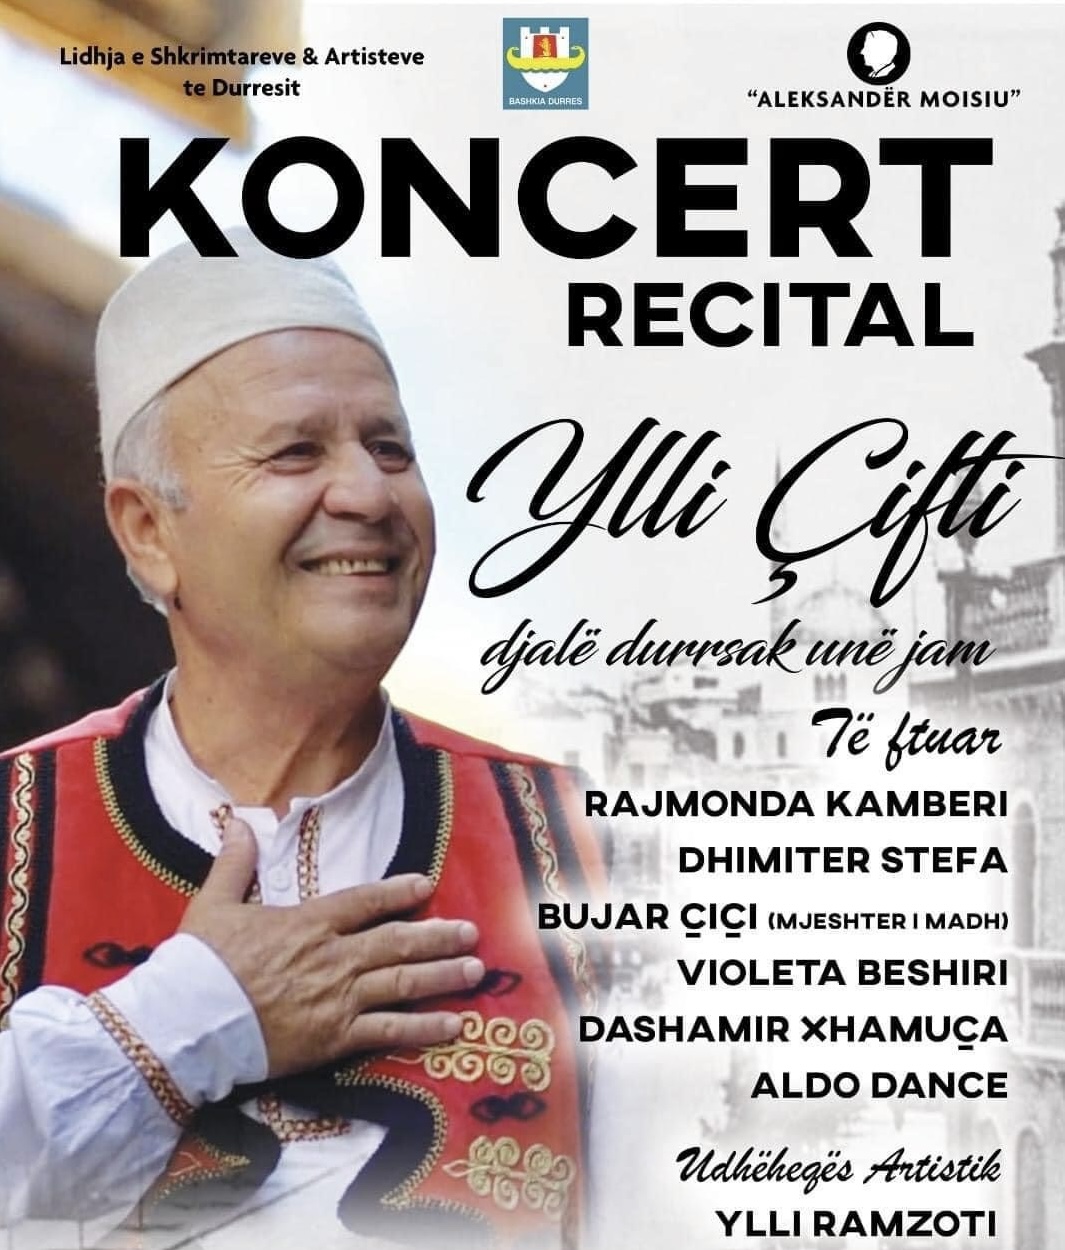 Posteri i koncertit recital te kengetarit Ylli Cifti (Facebook)